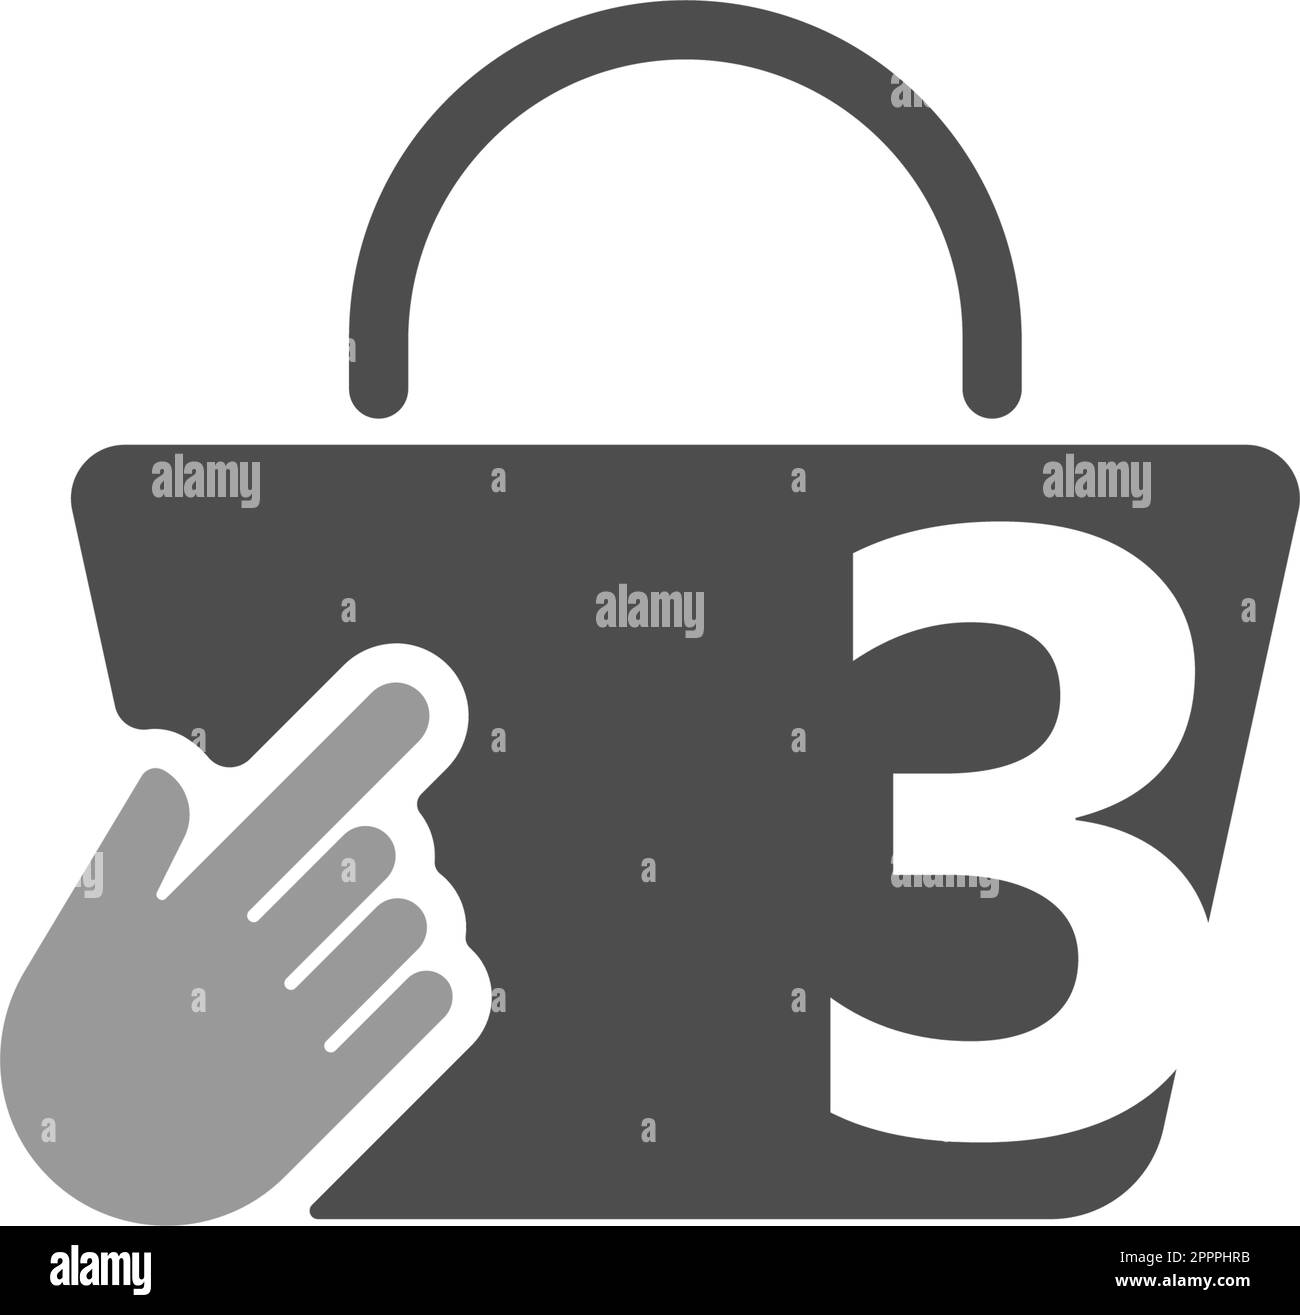 Online-Einkaufstasche, Cursor-Klick-Handsymbol mit Abbildung Nummer 3 Stock Vektor